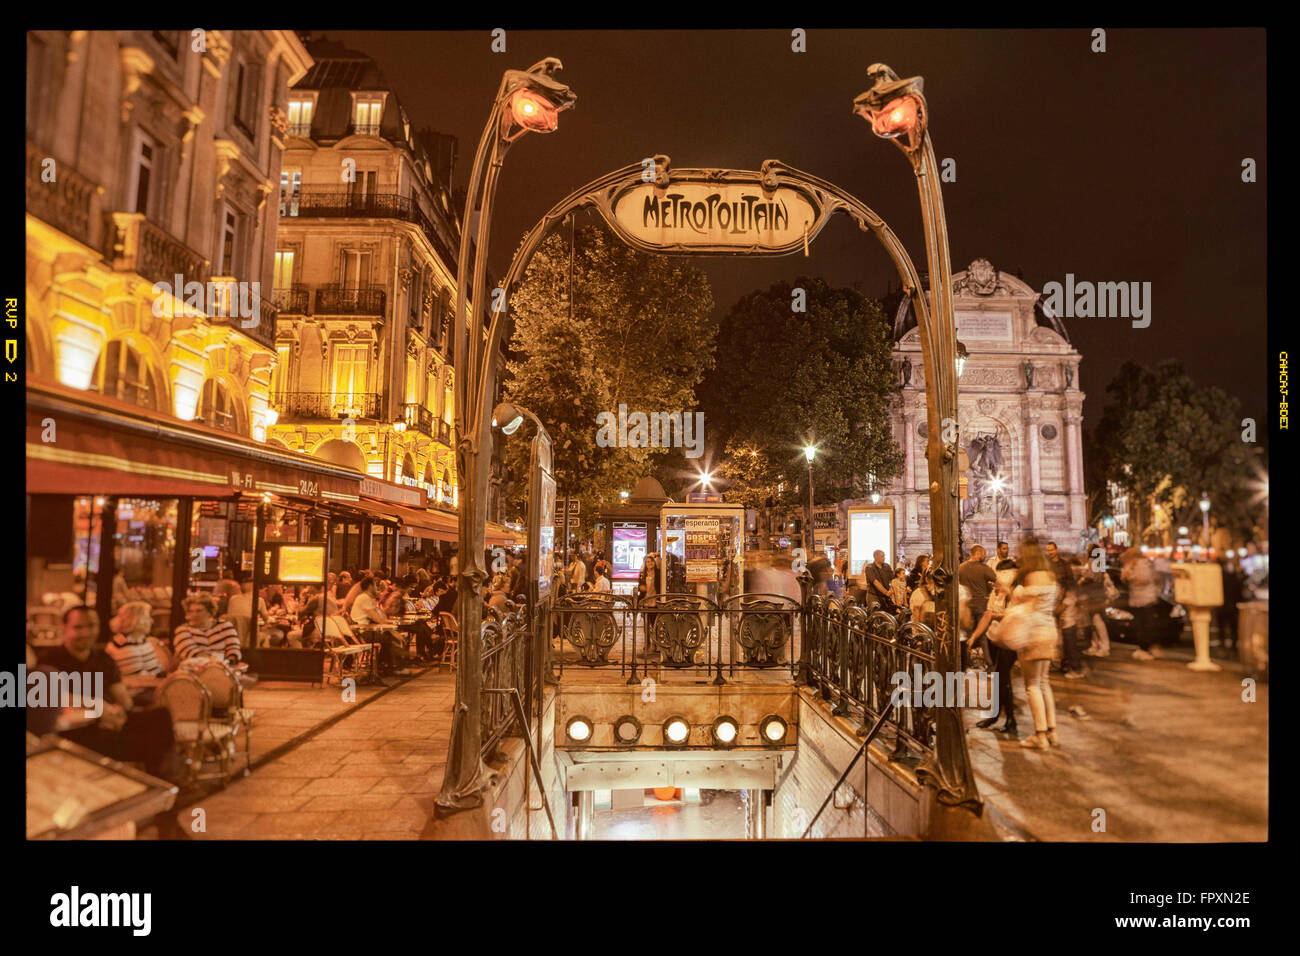 PARIS - Julio 12, 2014: Art Noveau signo metropolitana en lugar de Saint Michel. La estación de Saint Michel, situada en el centro de París. Foto de stock